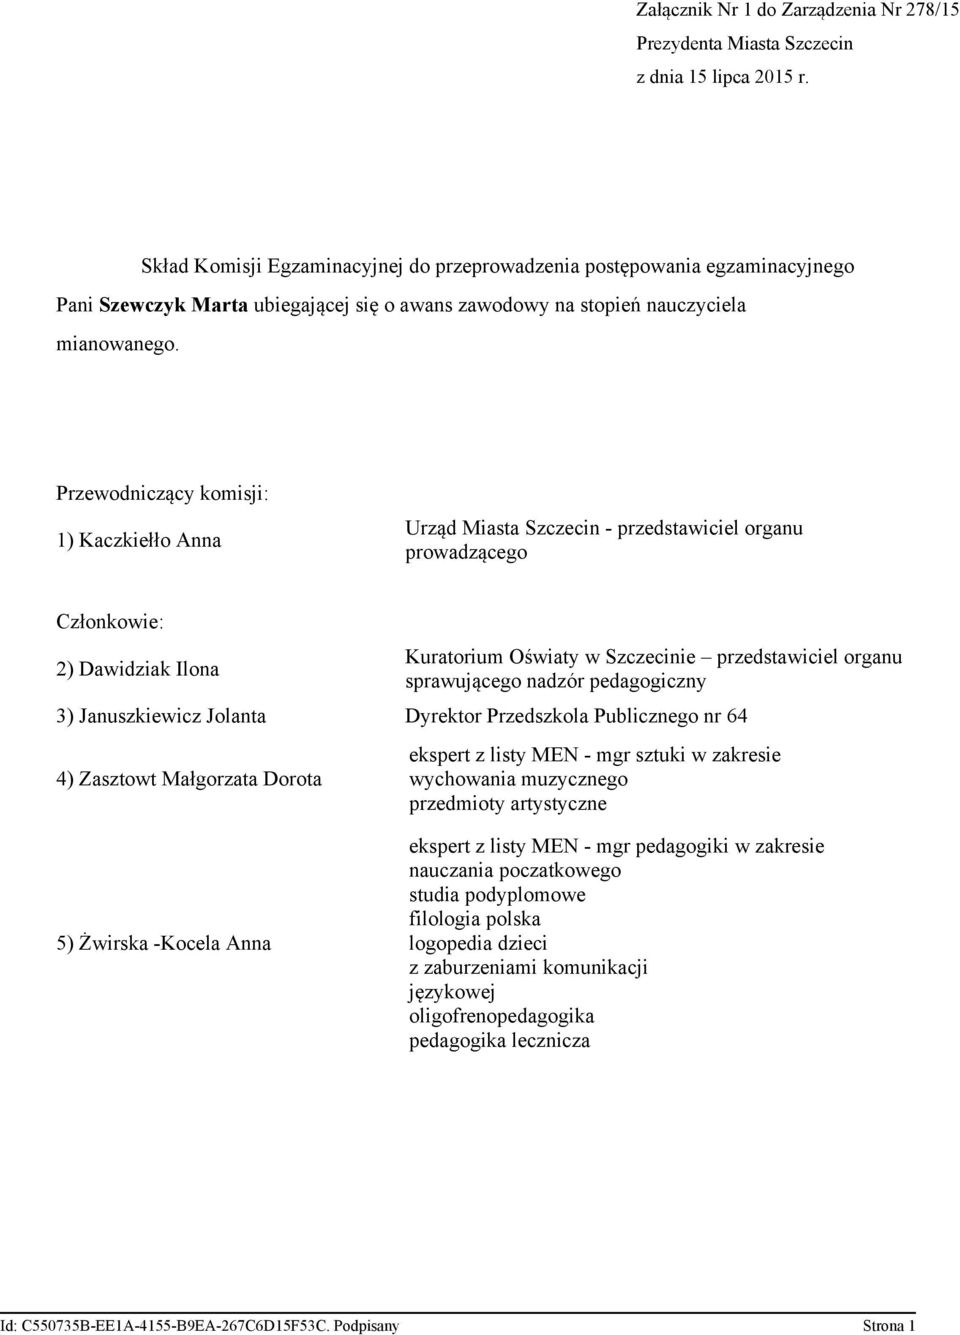 zakresie wychowania muzycznego przedmioty artystyczne 5) Żwirska -Kocela Anna ekspert z listy MEN - mgr pedagogiki w zakresie nauczania